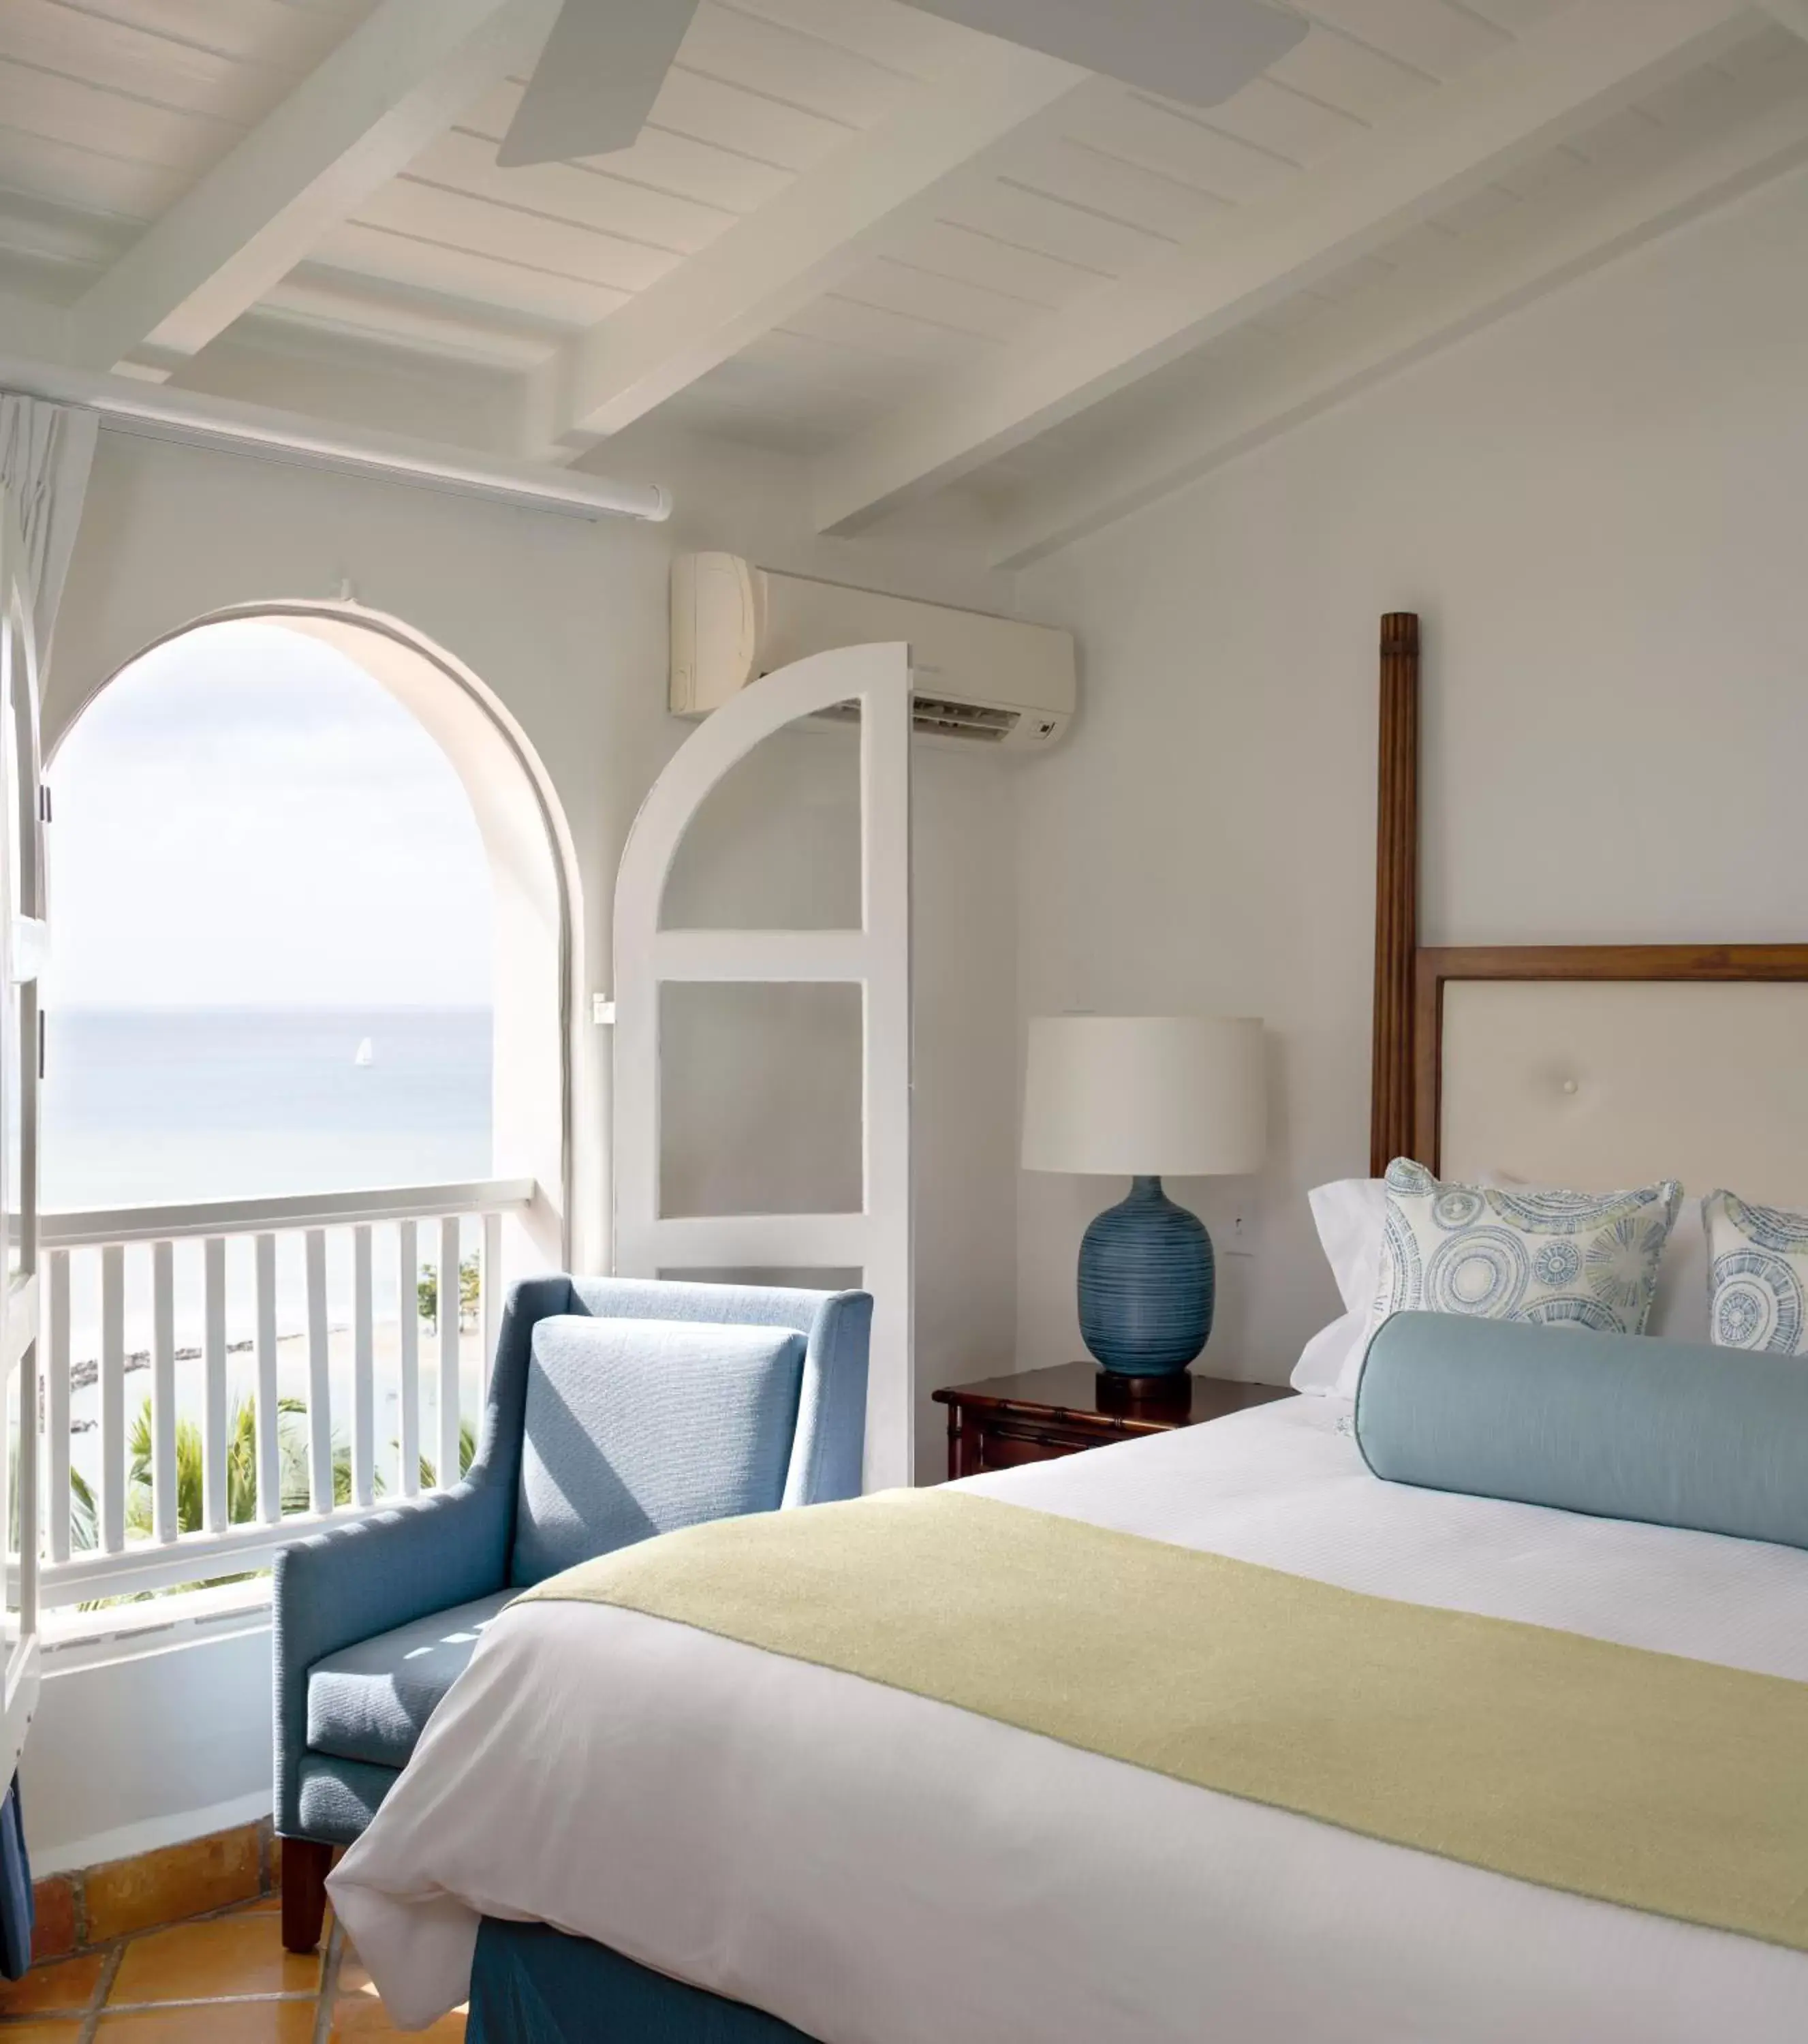 Bed, Room Photo in Windjammer Landing Villa Beach Resort